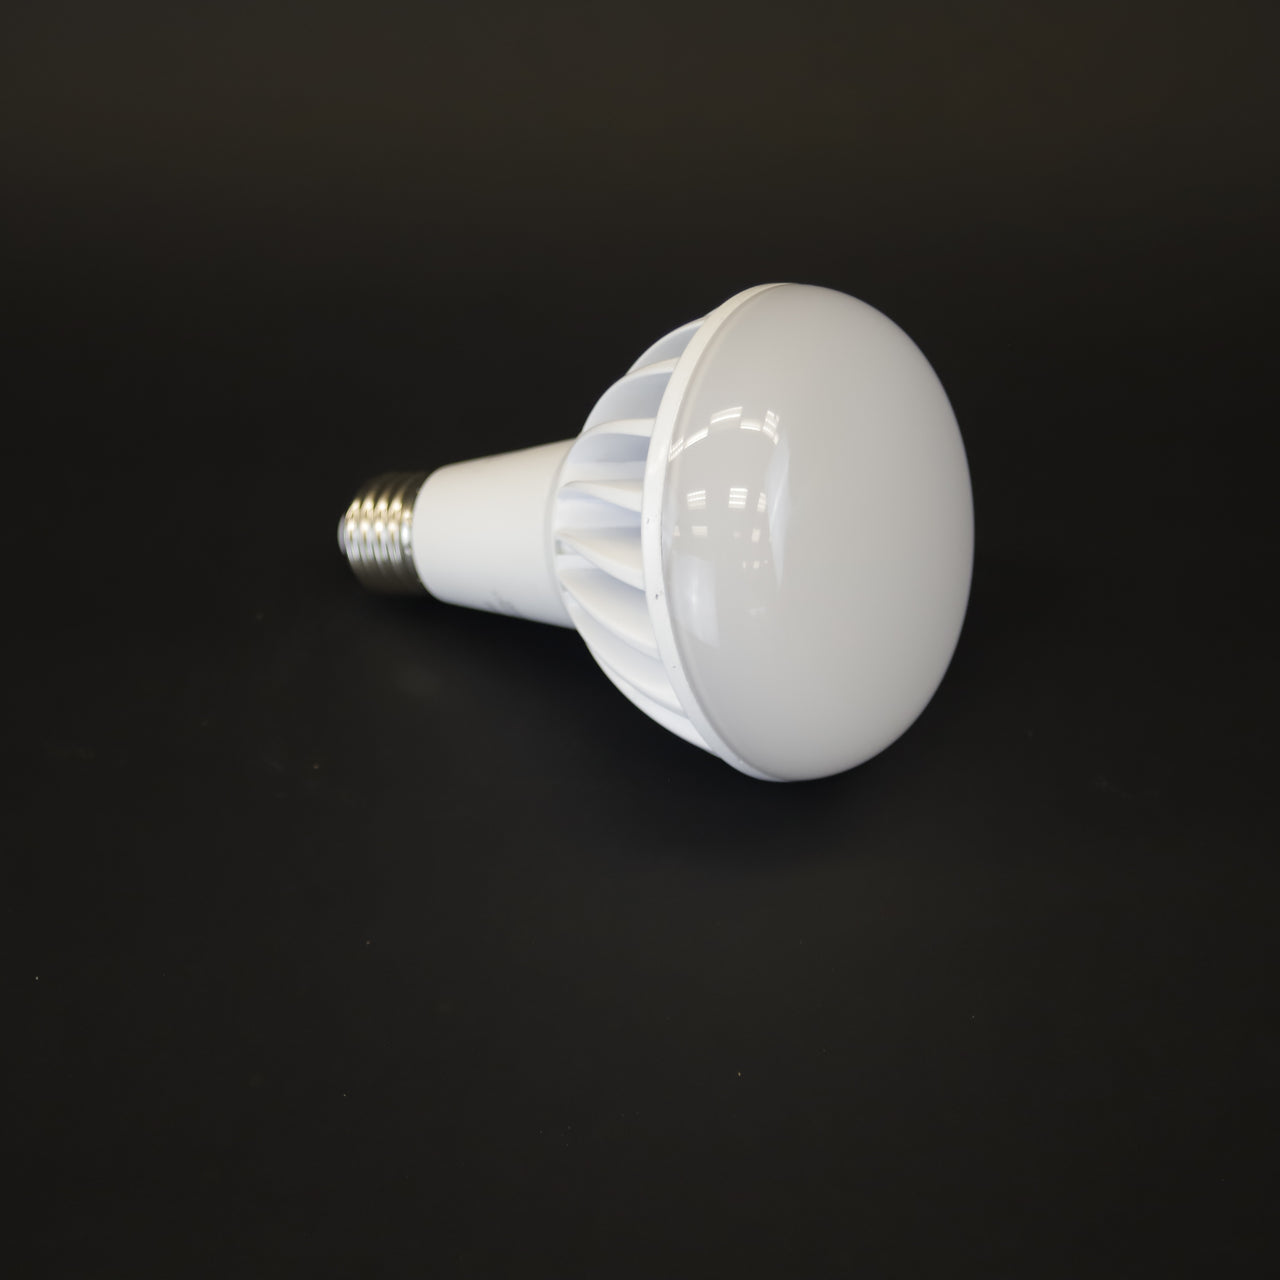 HCKE9788 - LED Light Bulb - 12W Dim